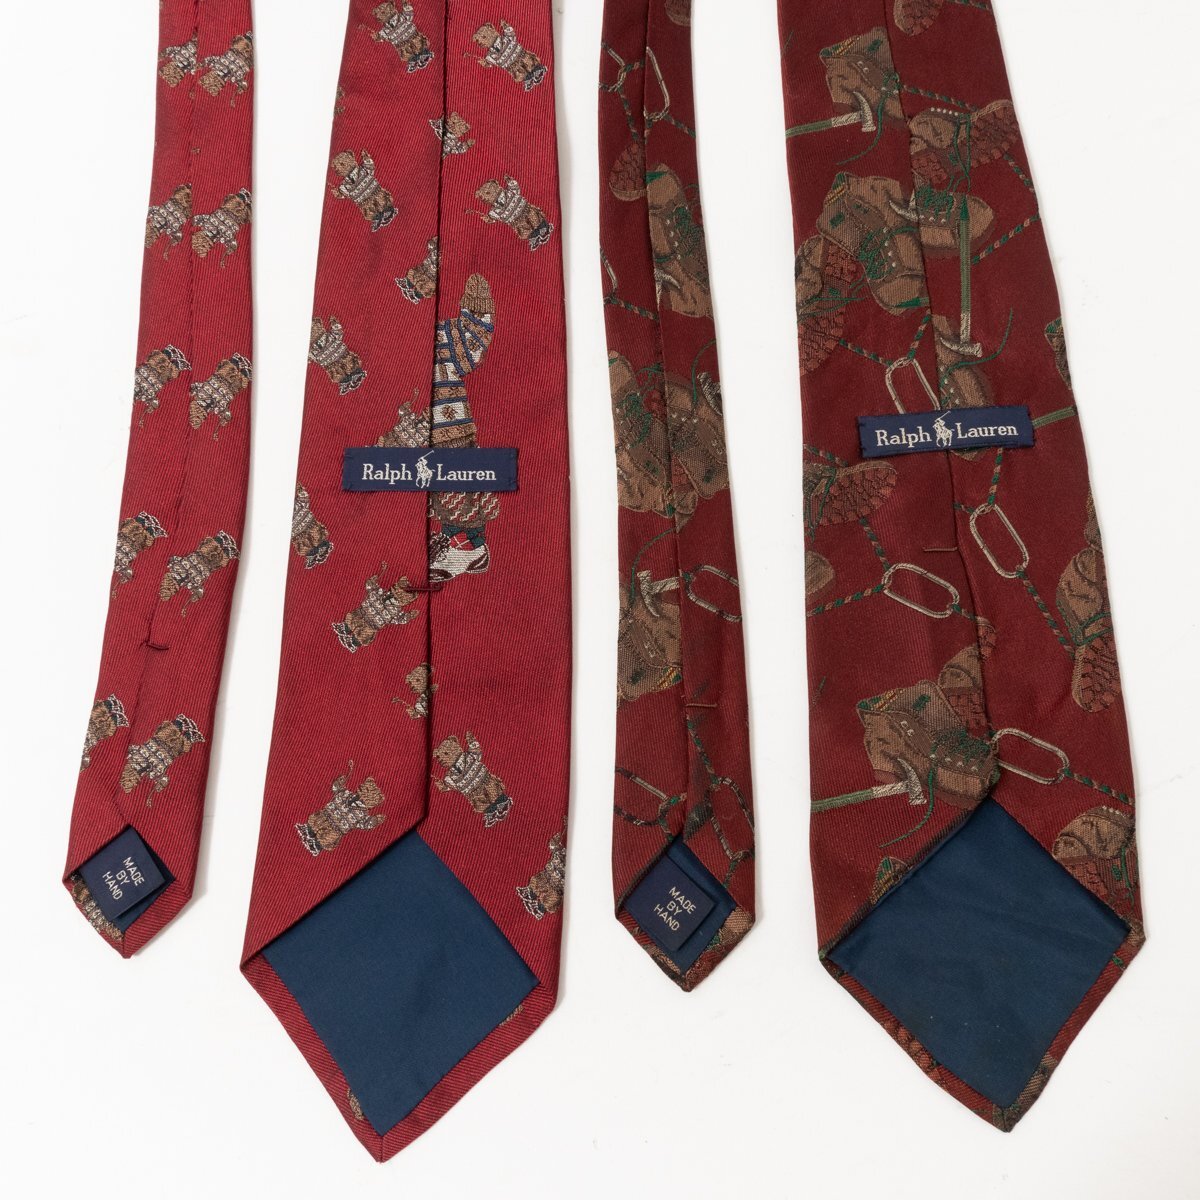  mail service 0 2 pcs set RALPH LAUREN Ralph Lauren silk necktie England made silk 100% red group Bear - pattern tore King shoes pattern men's 